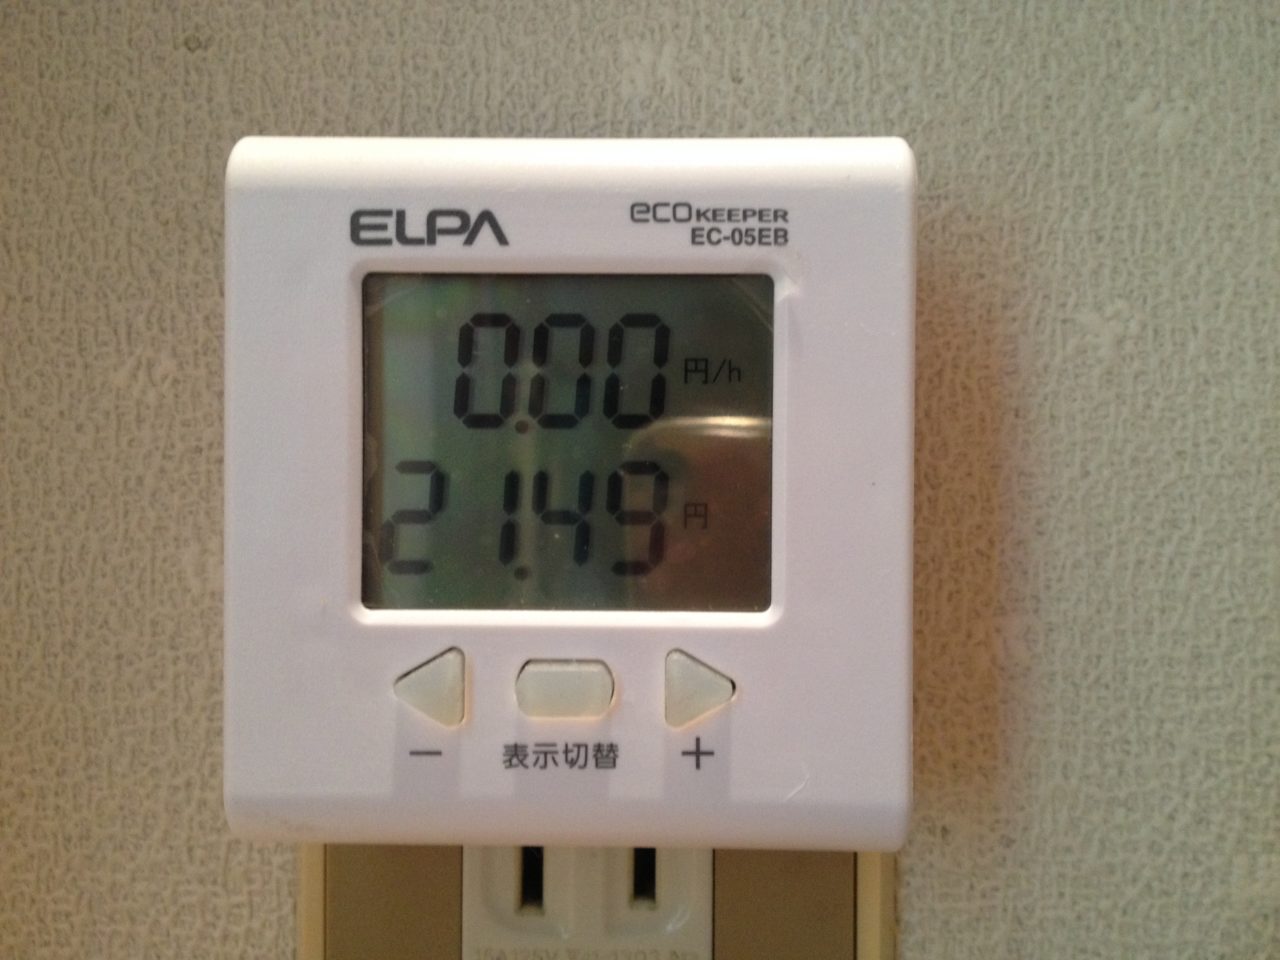 電気料金は21円